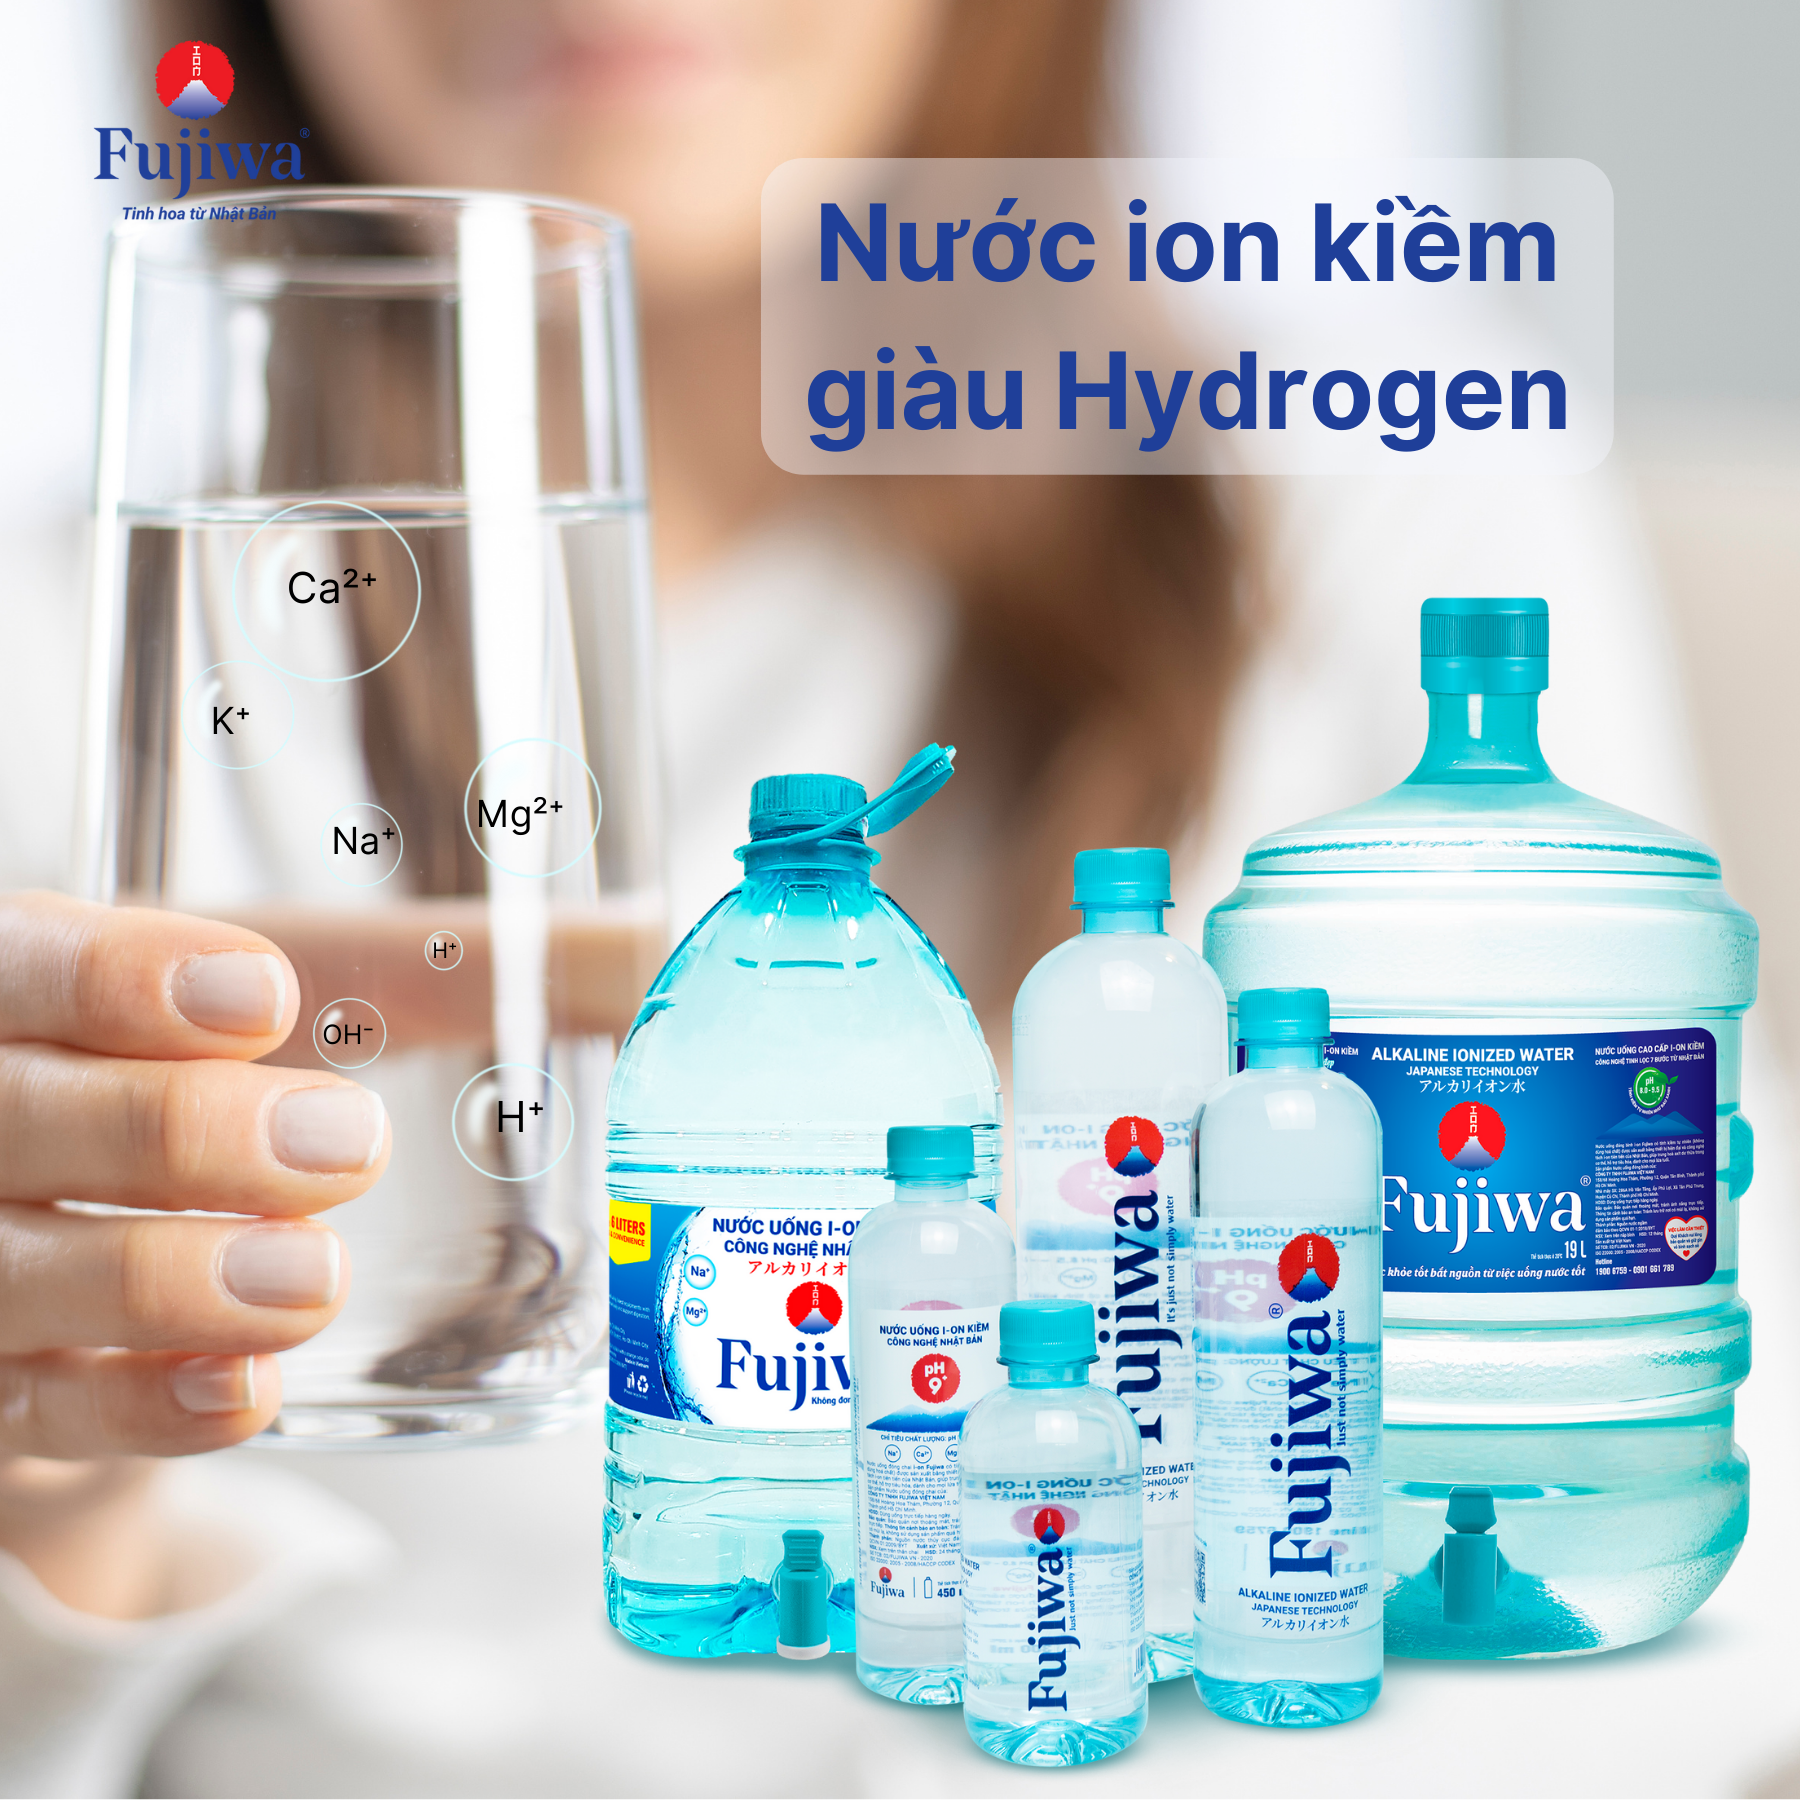 nước ion kiềm giàu hydrogen giúp cơ thể khỏe mạnh